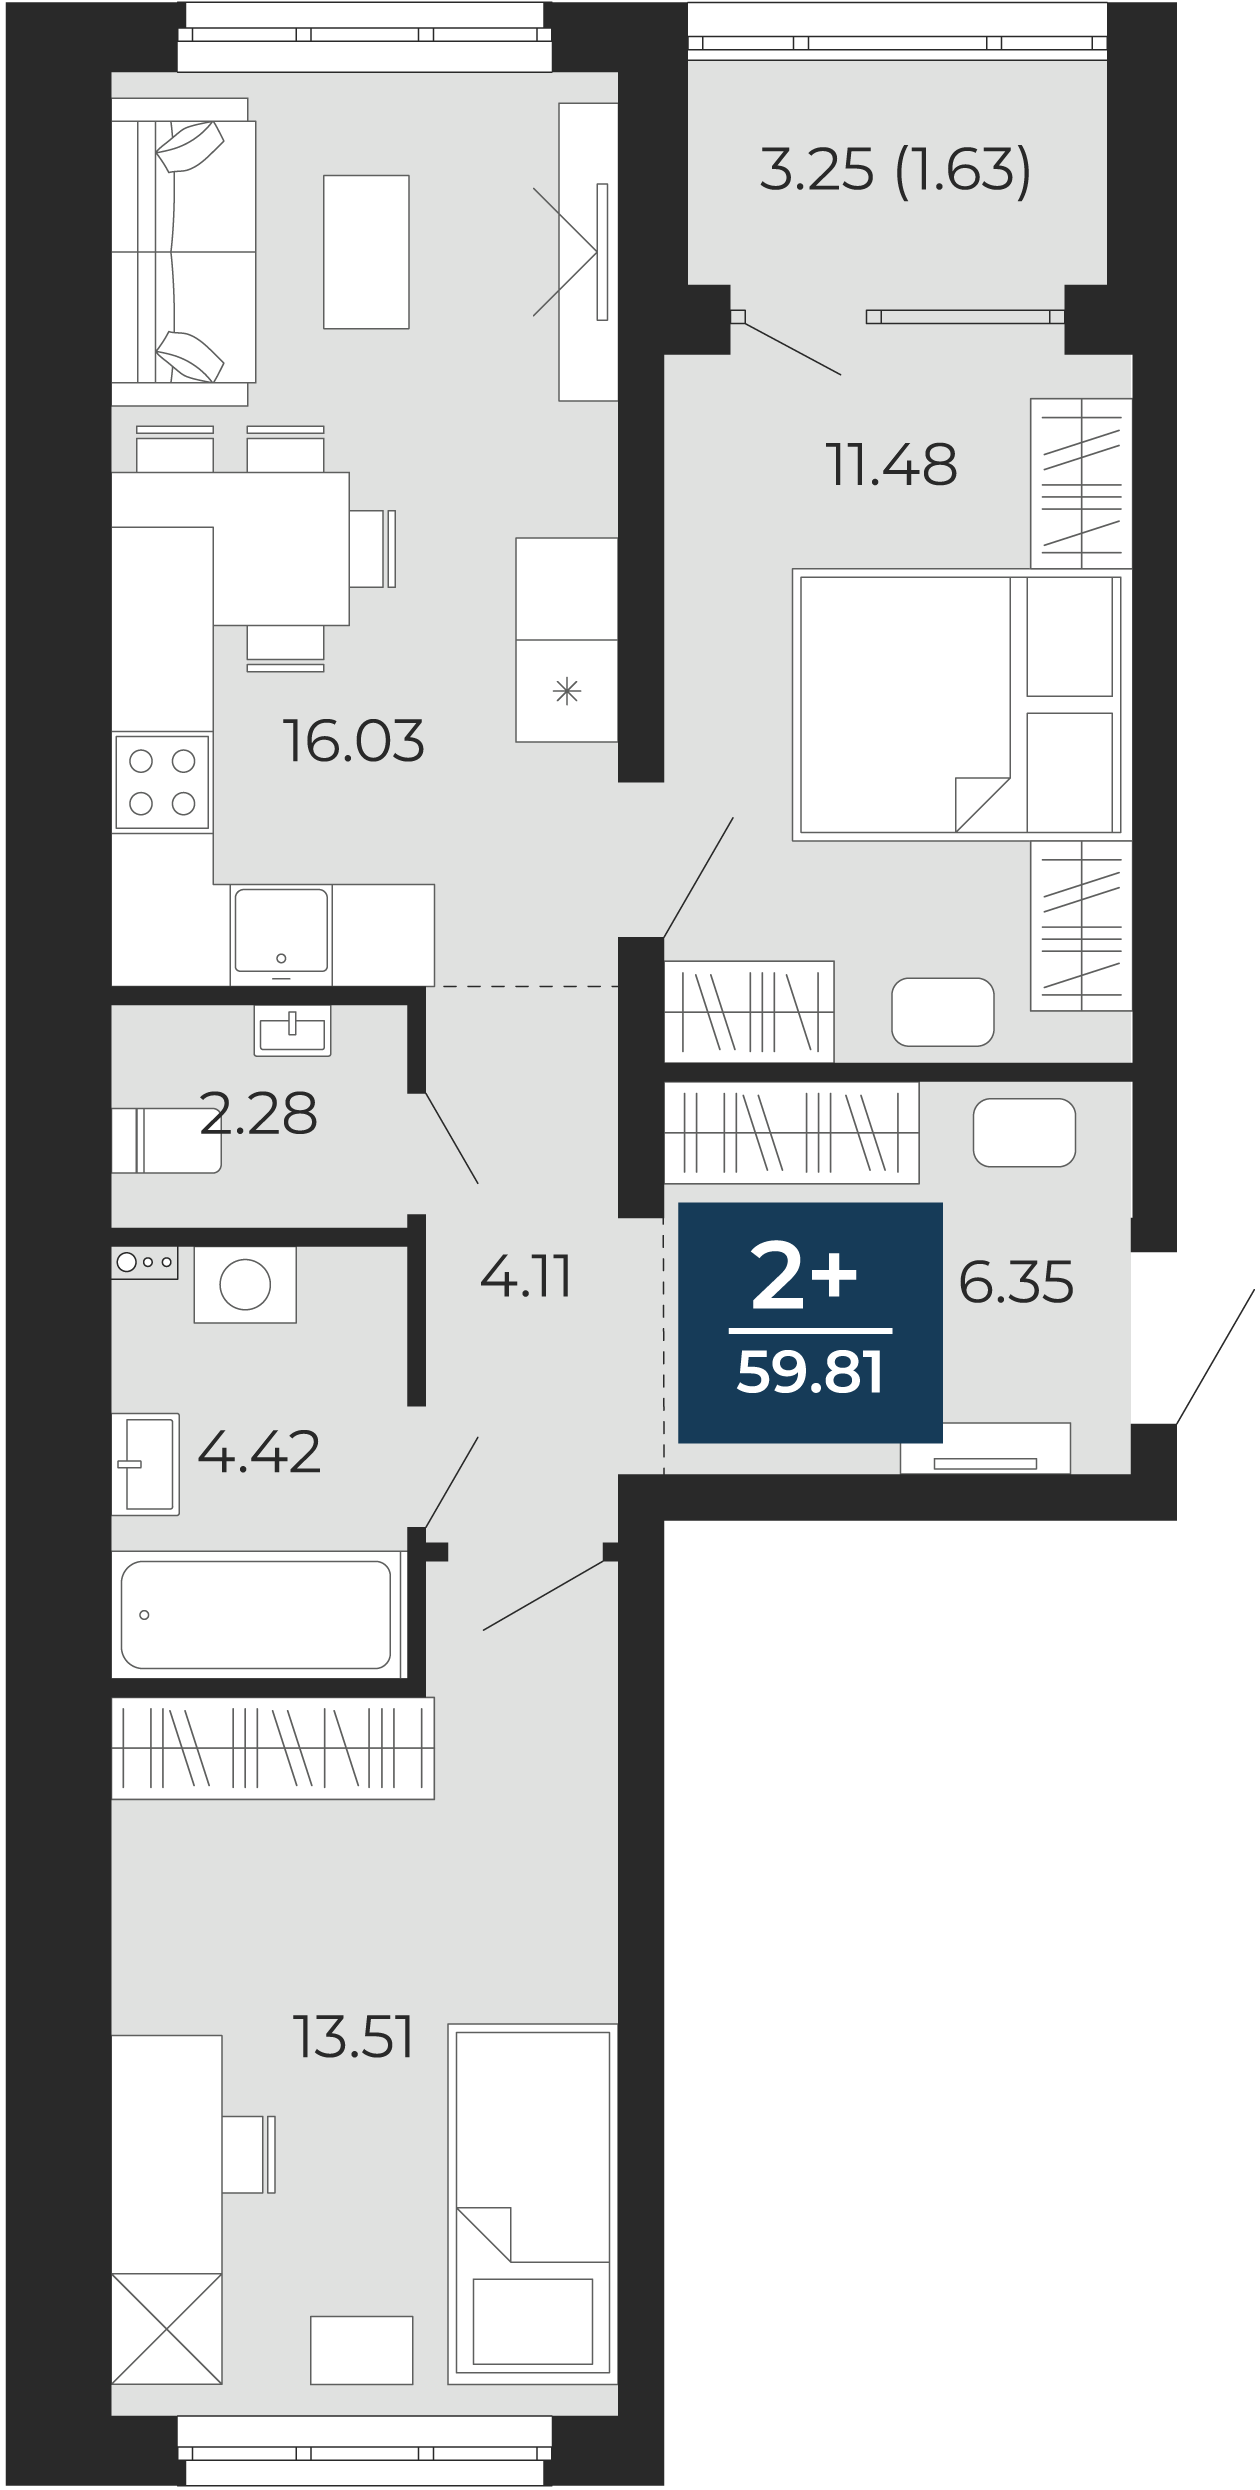 Квартира № 275, 2-комнатная, 59.81 кв. м, 2 этаж